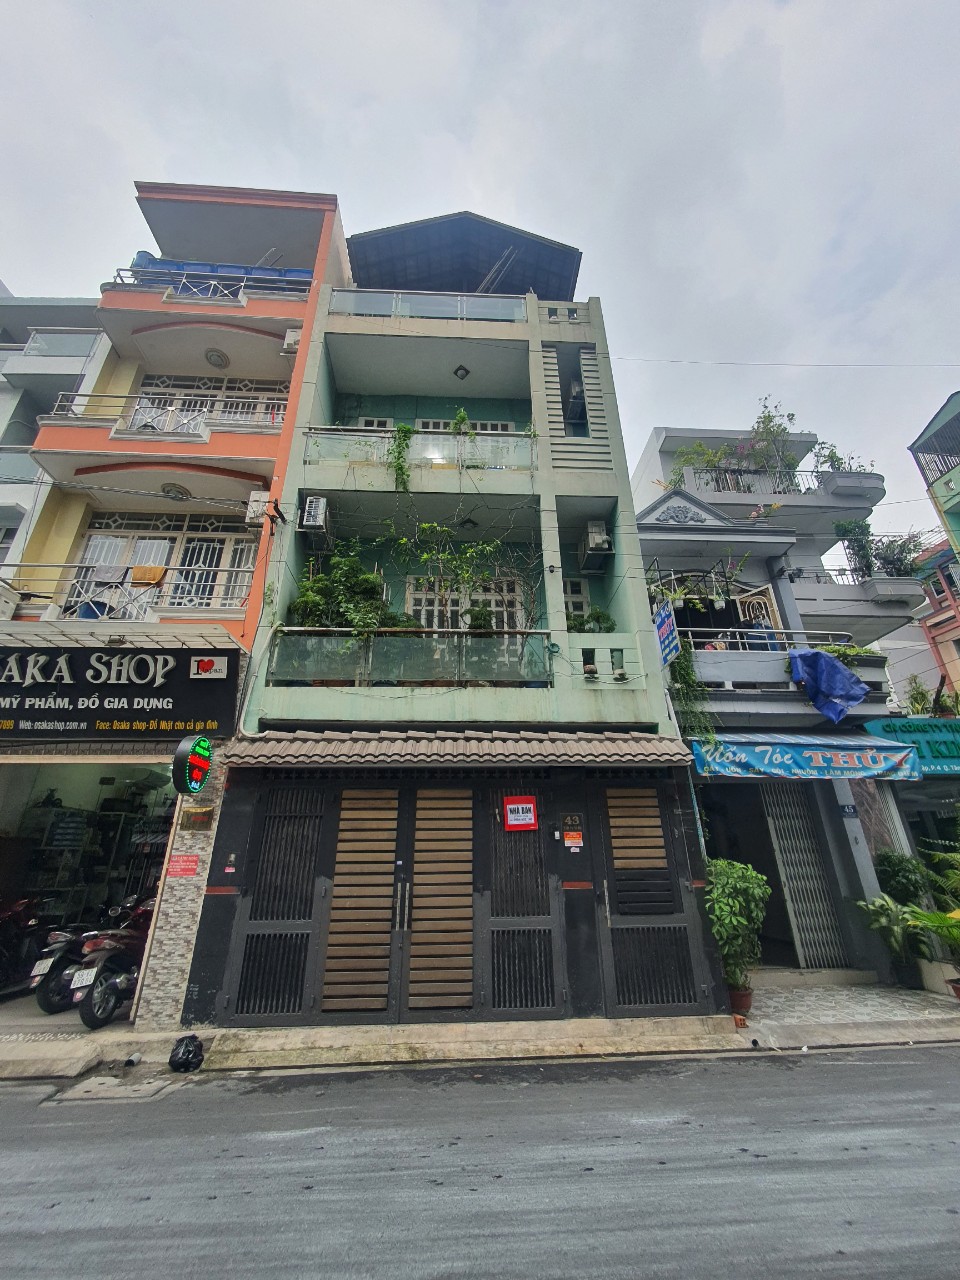 Cần bán nhà 2 mặt tiền đường Bành Văn Trân Quận Tân Bình, DT 5,2x16m, 3 tầng. Giá chỉ 11.9 tỷ TL